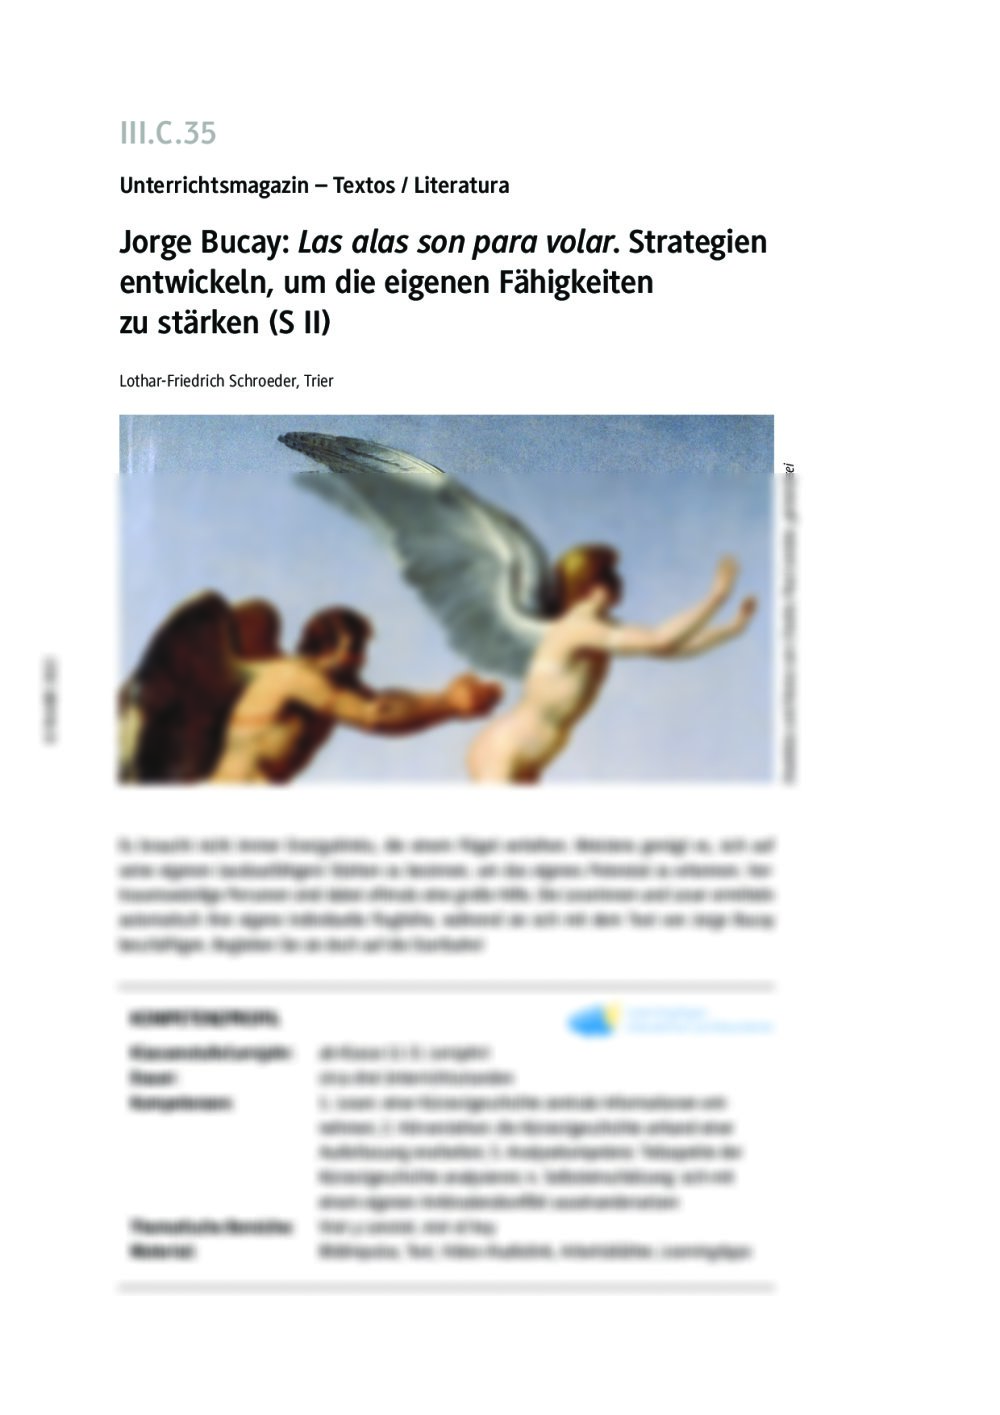 Jorge Bucay: "Las alas son para volar" - Seite 1